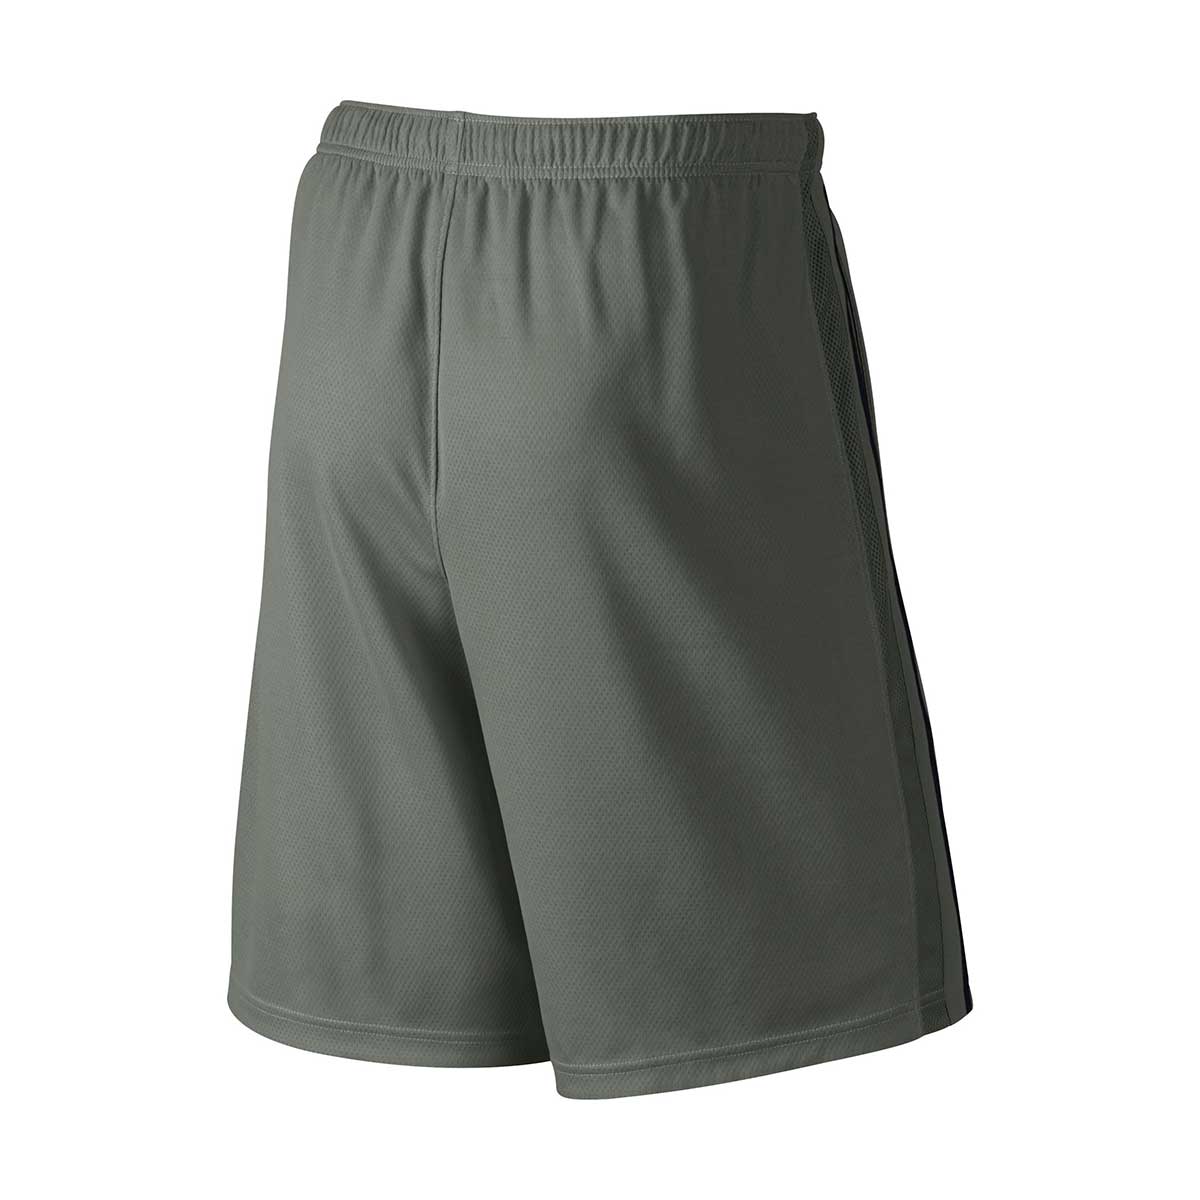 Buy Nike Epic Knit Basic Shorts (Grey/Black) Online in India